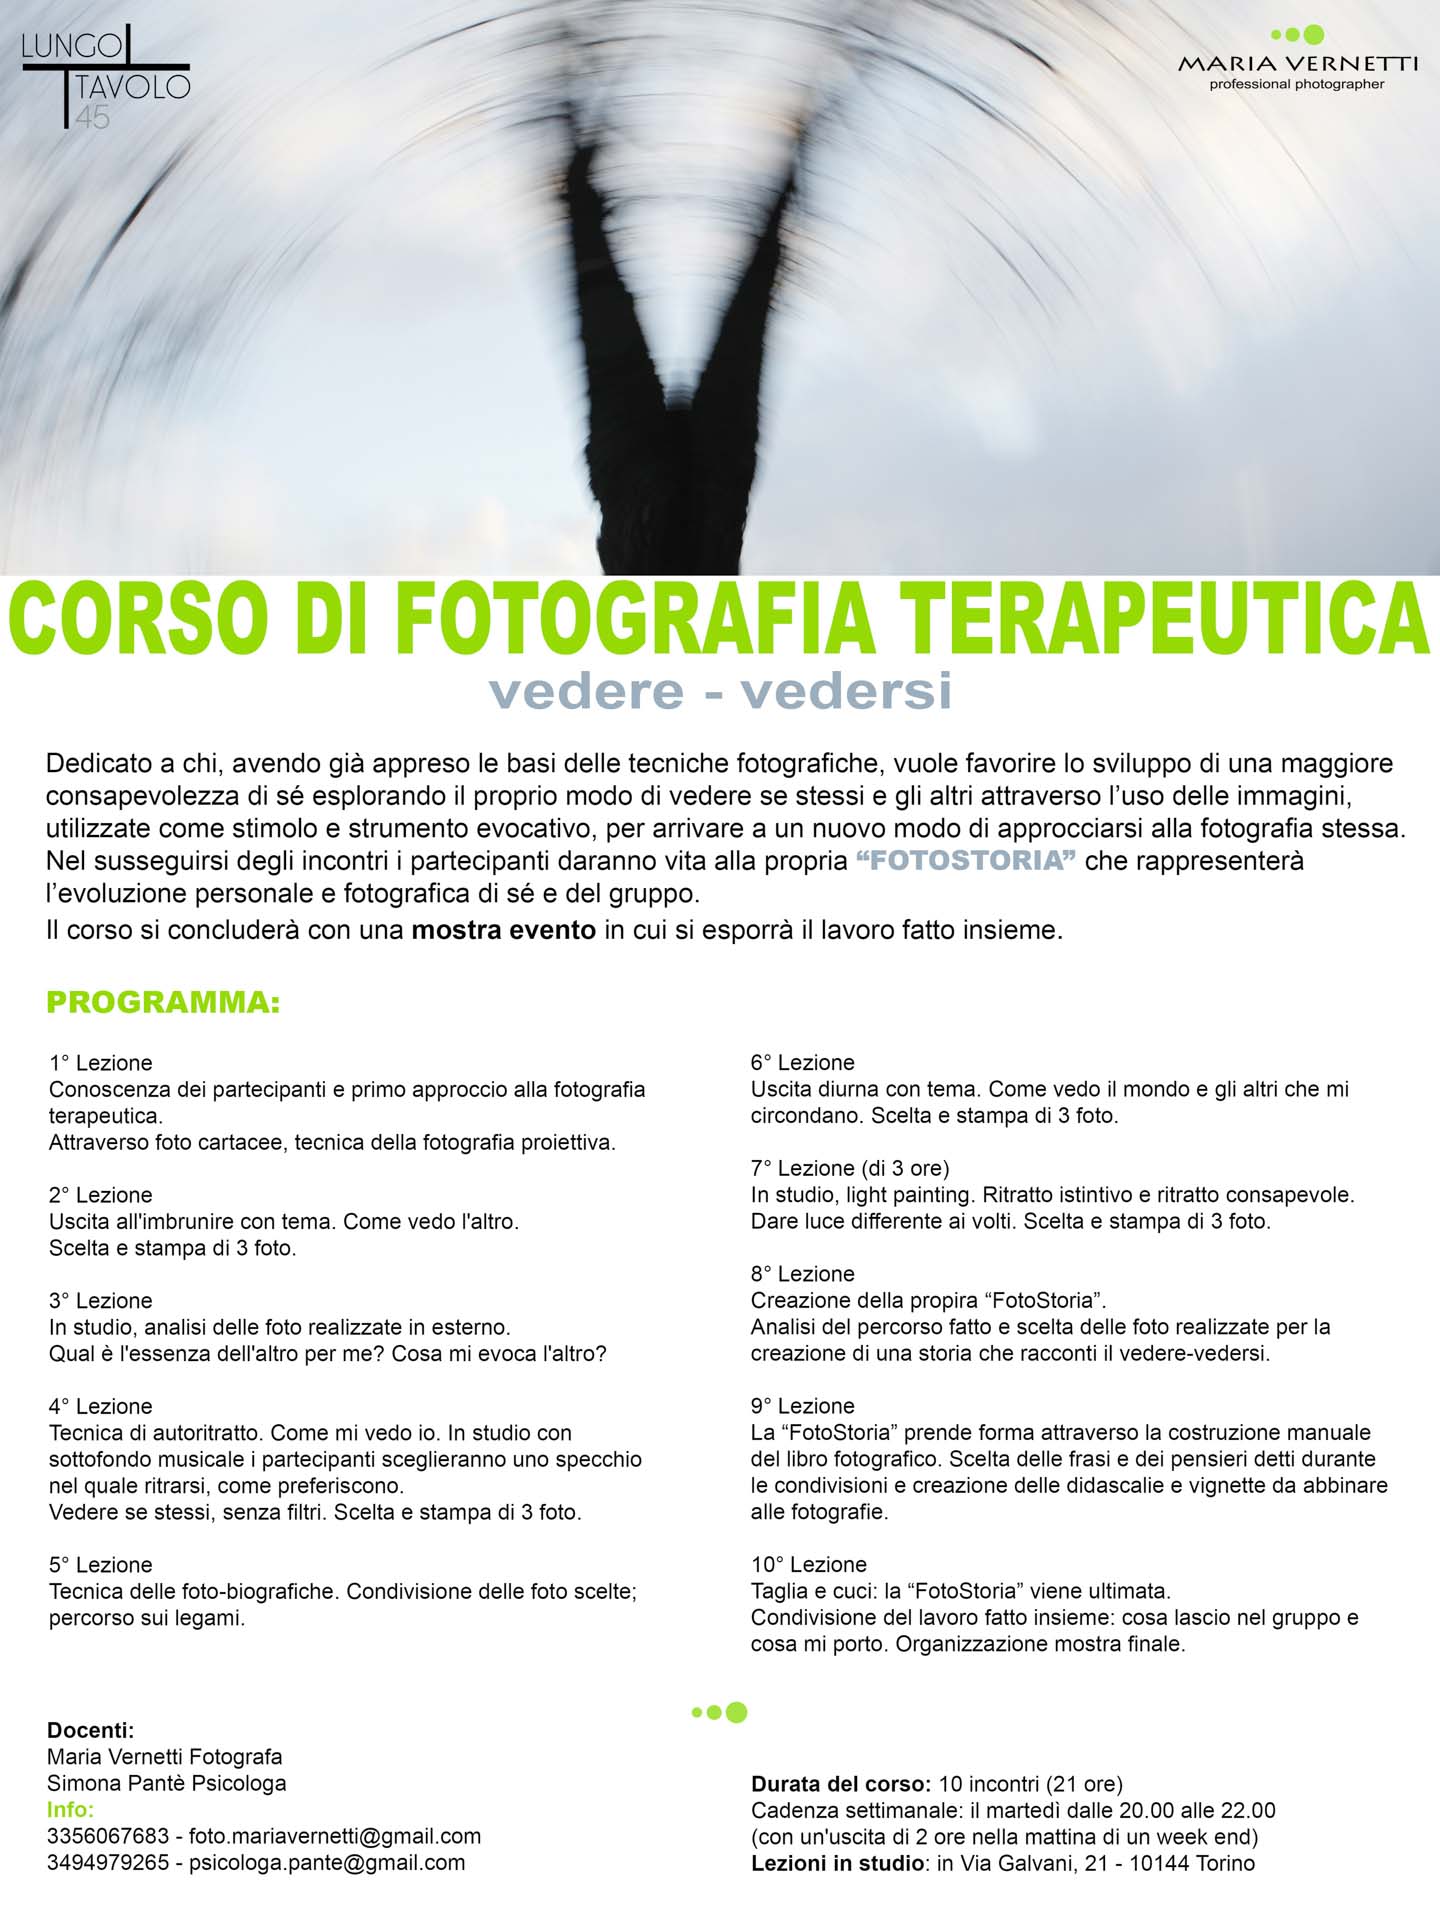 CORSI_WORKSHOP_MARIA_VERNETTI_006_VolantinoCorsoFotografiaTerapeutica